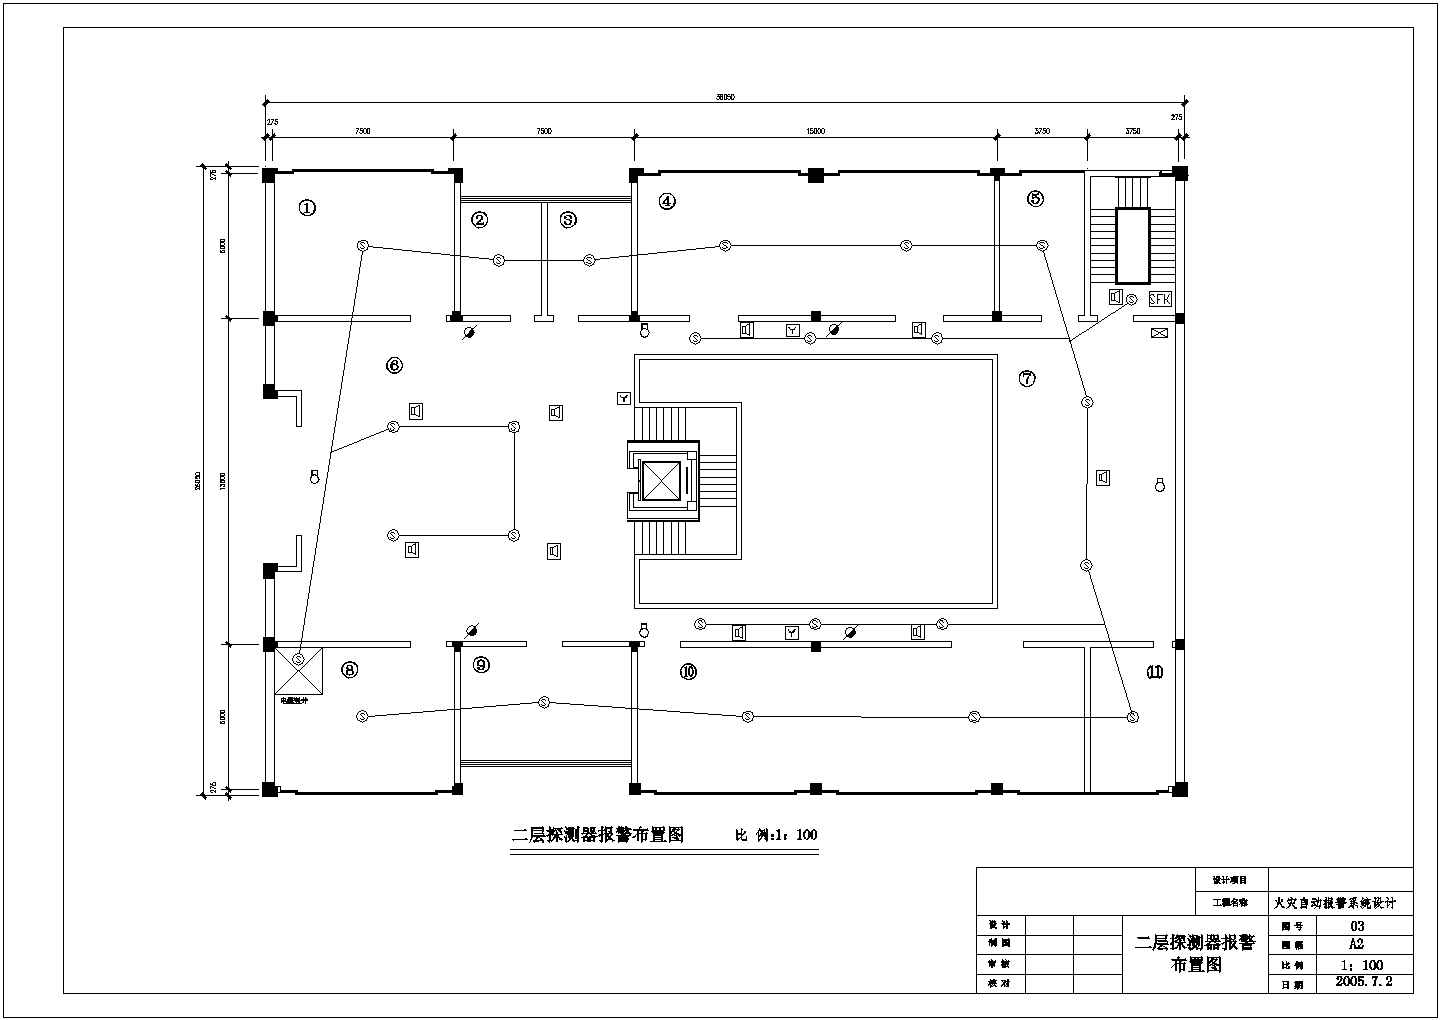 浙江省金华市某消防设施公司火灾自动报警系统设计CAD图